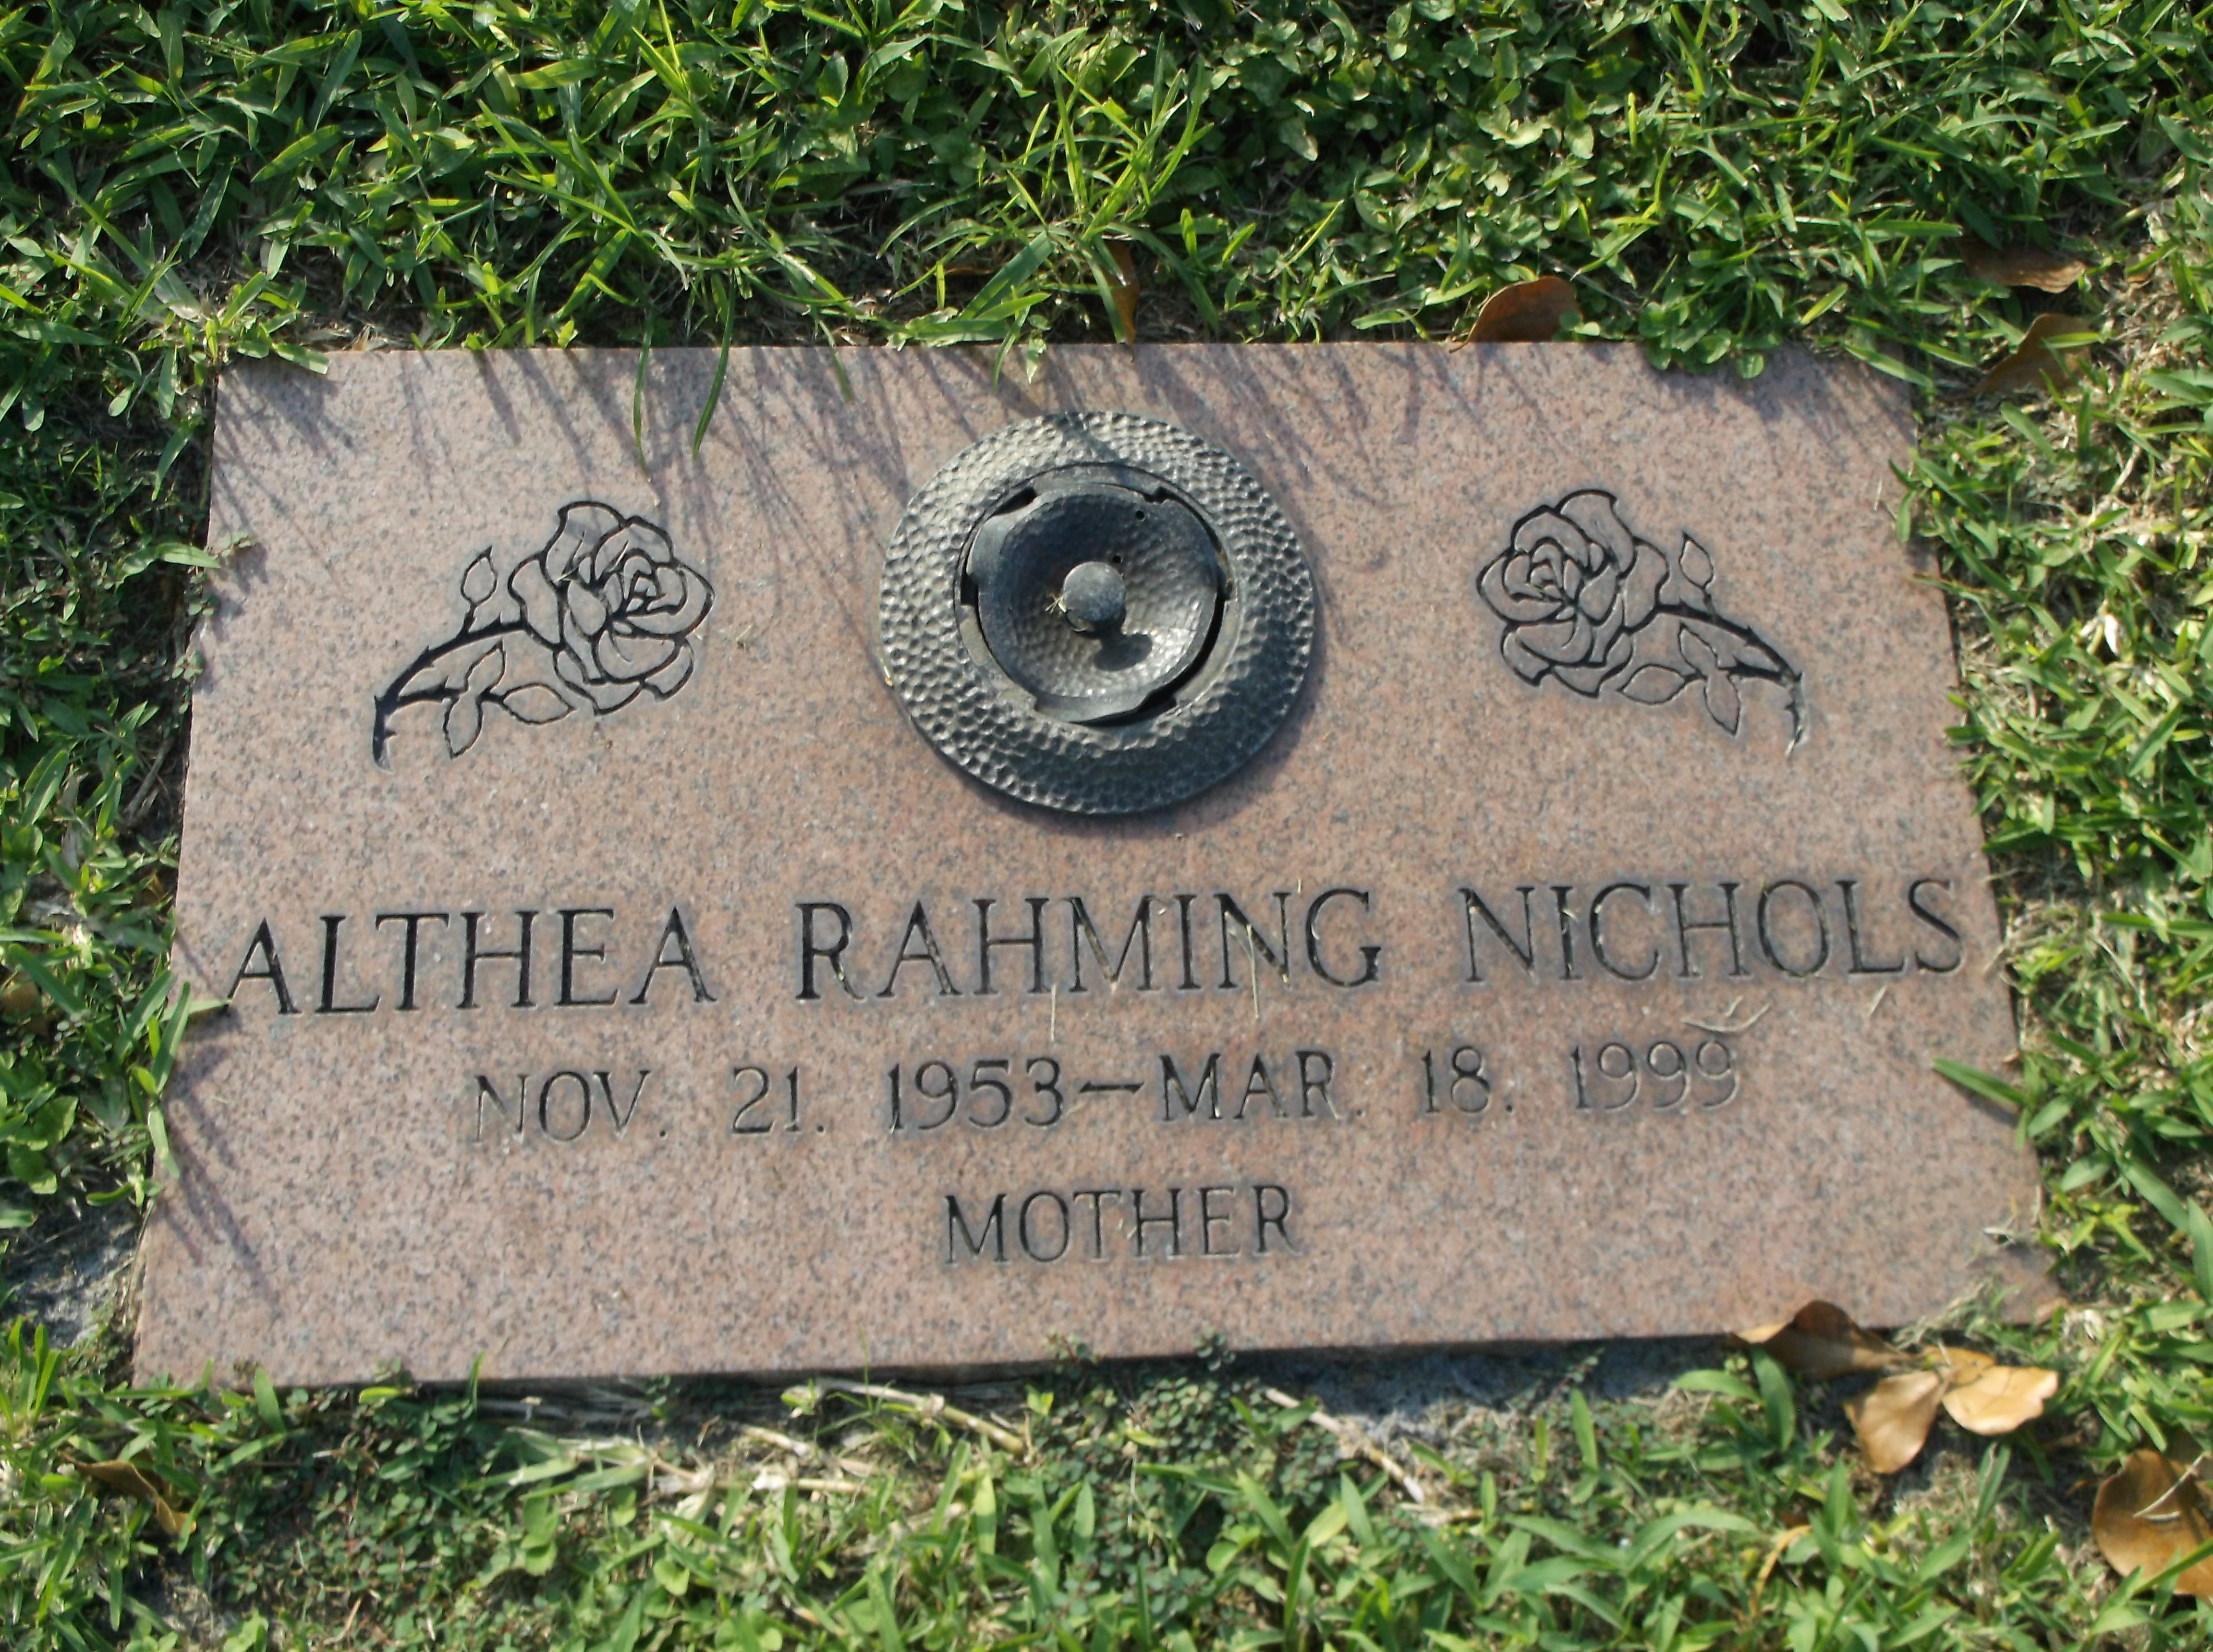 Althea Rahming Nichols